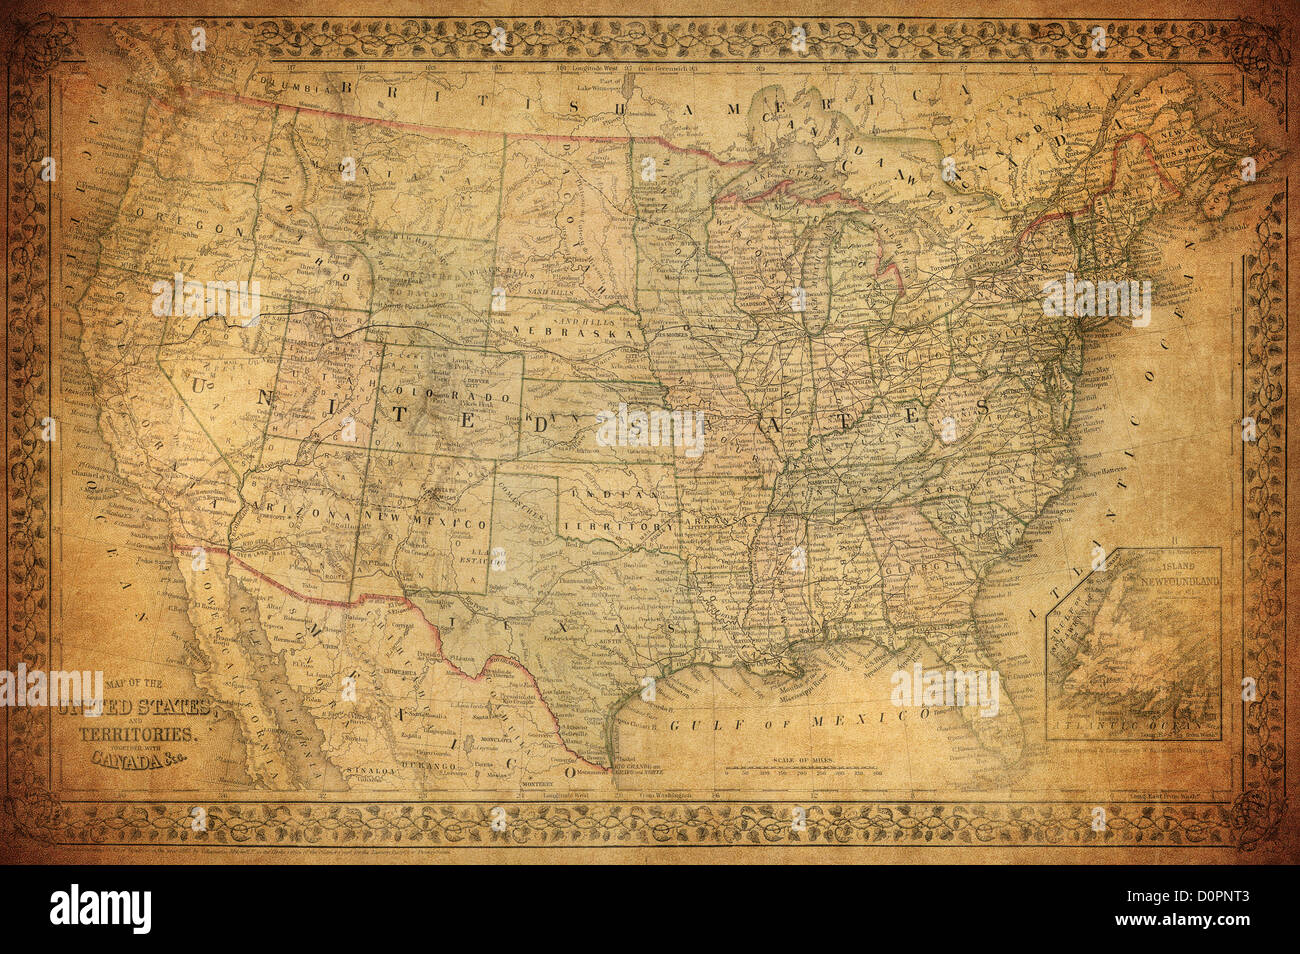 Mapa De Estados Unidos De 1870 Mapa De Estados Unidos 4123